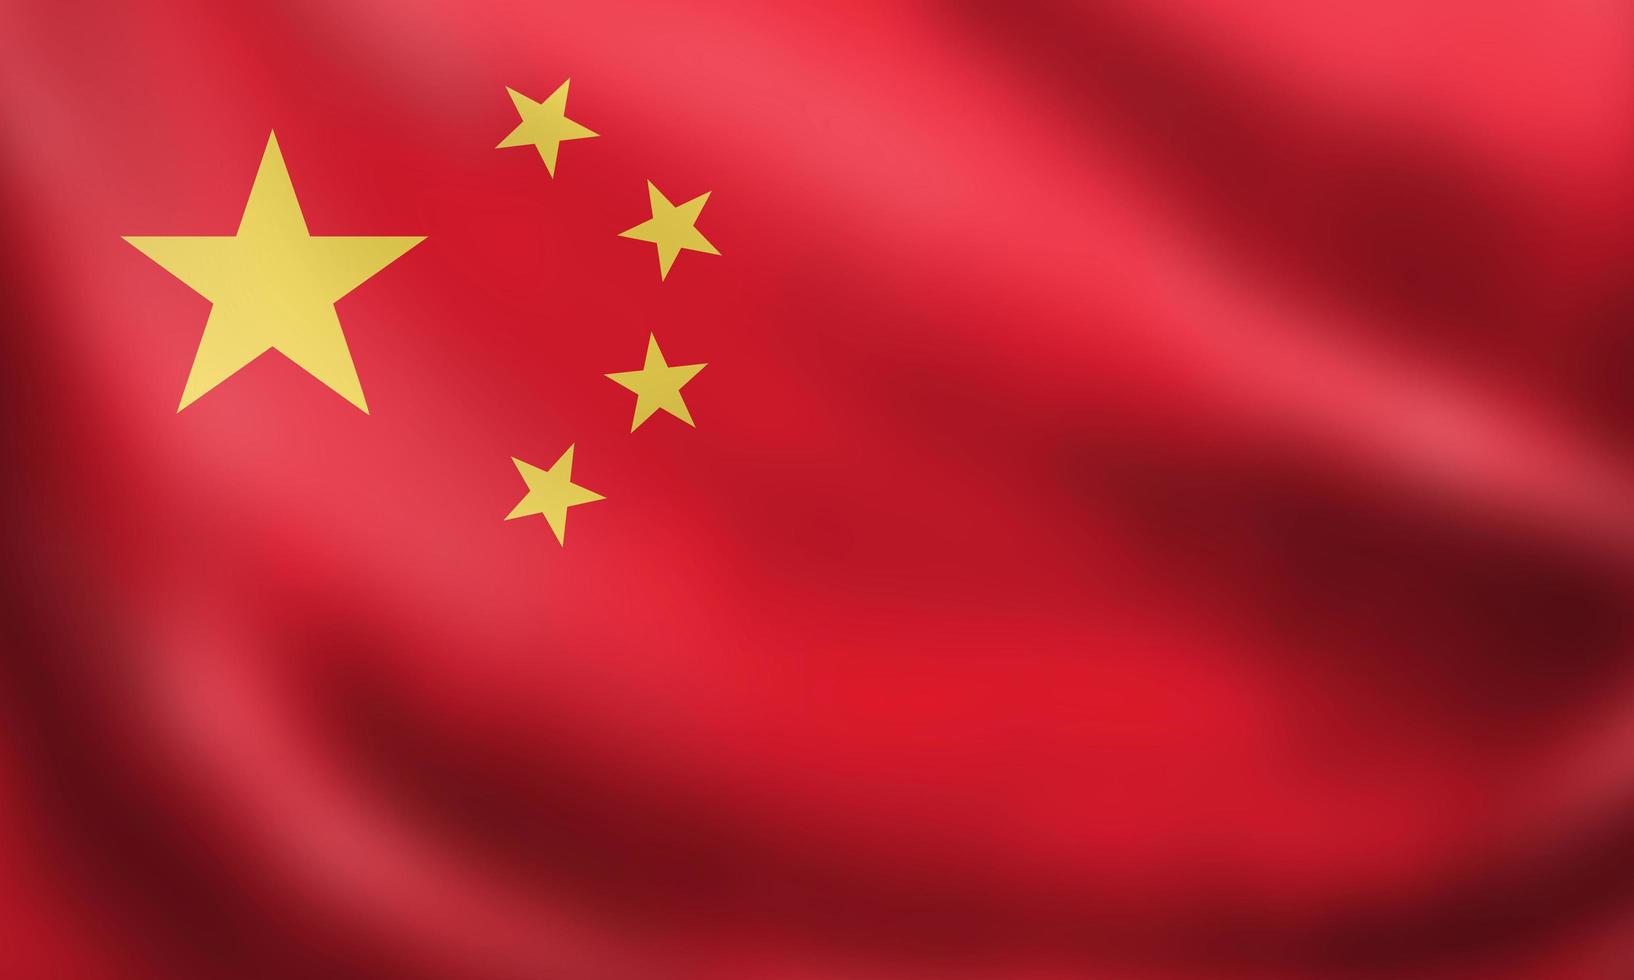 drapeau de la république populaire de chine drapeau rouge cinq étoiles. rendu 3d agitant le drapeau agitant l'image de haute qualité. symbole officiel de l'état chinois du pays. couleurs, tailles et formes originales. photo